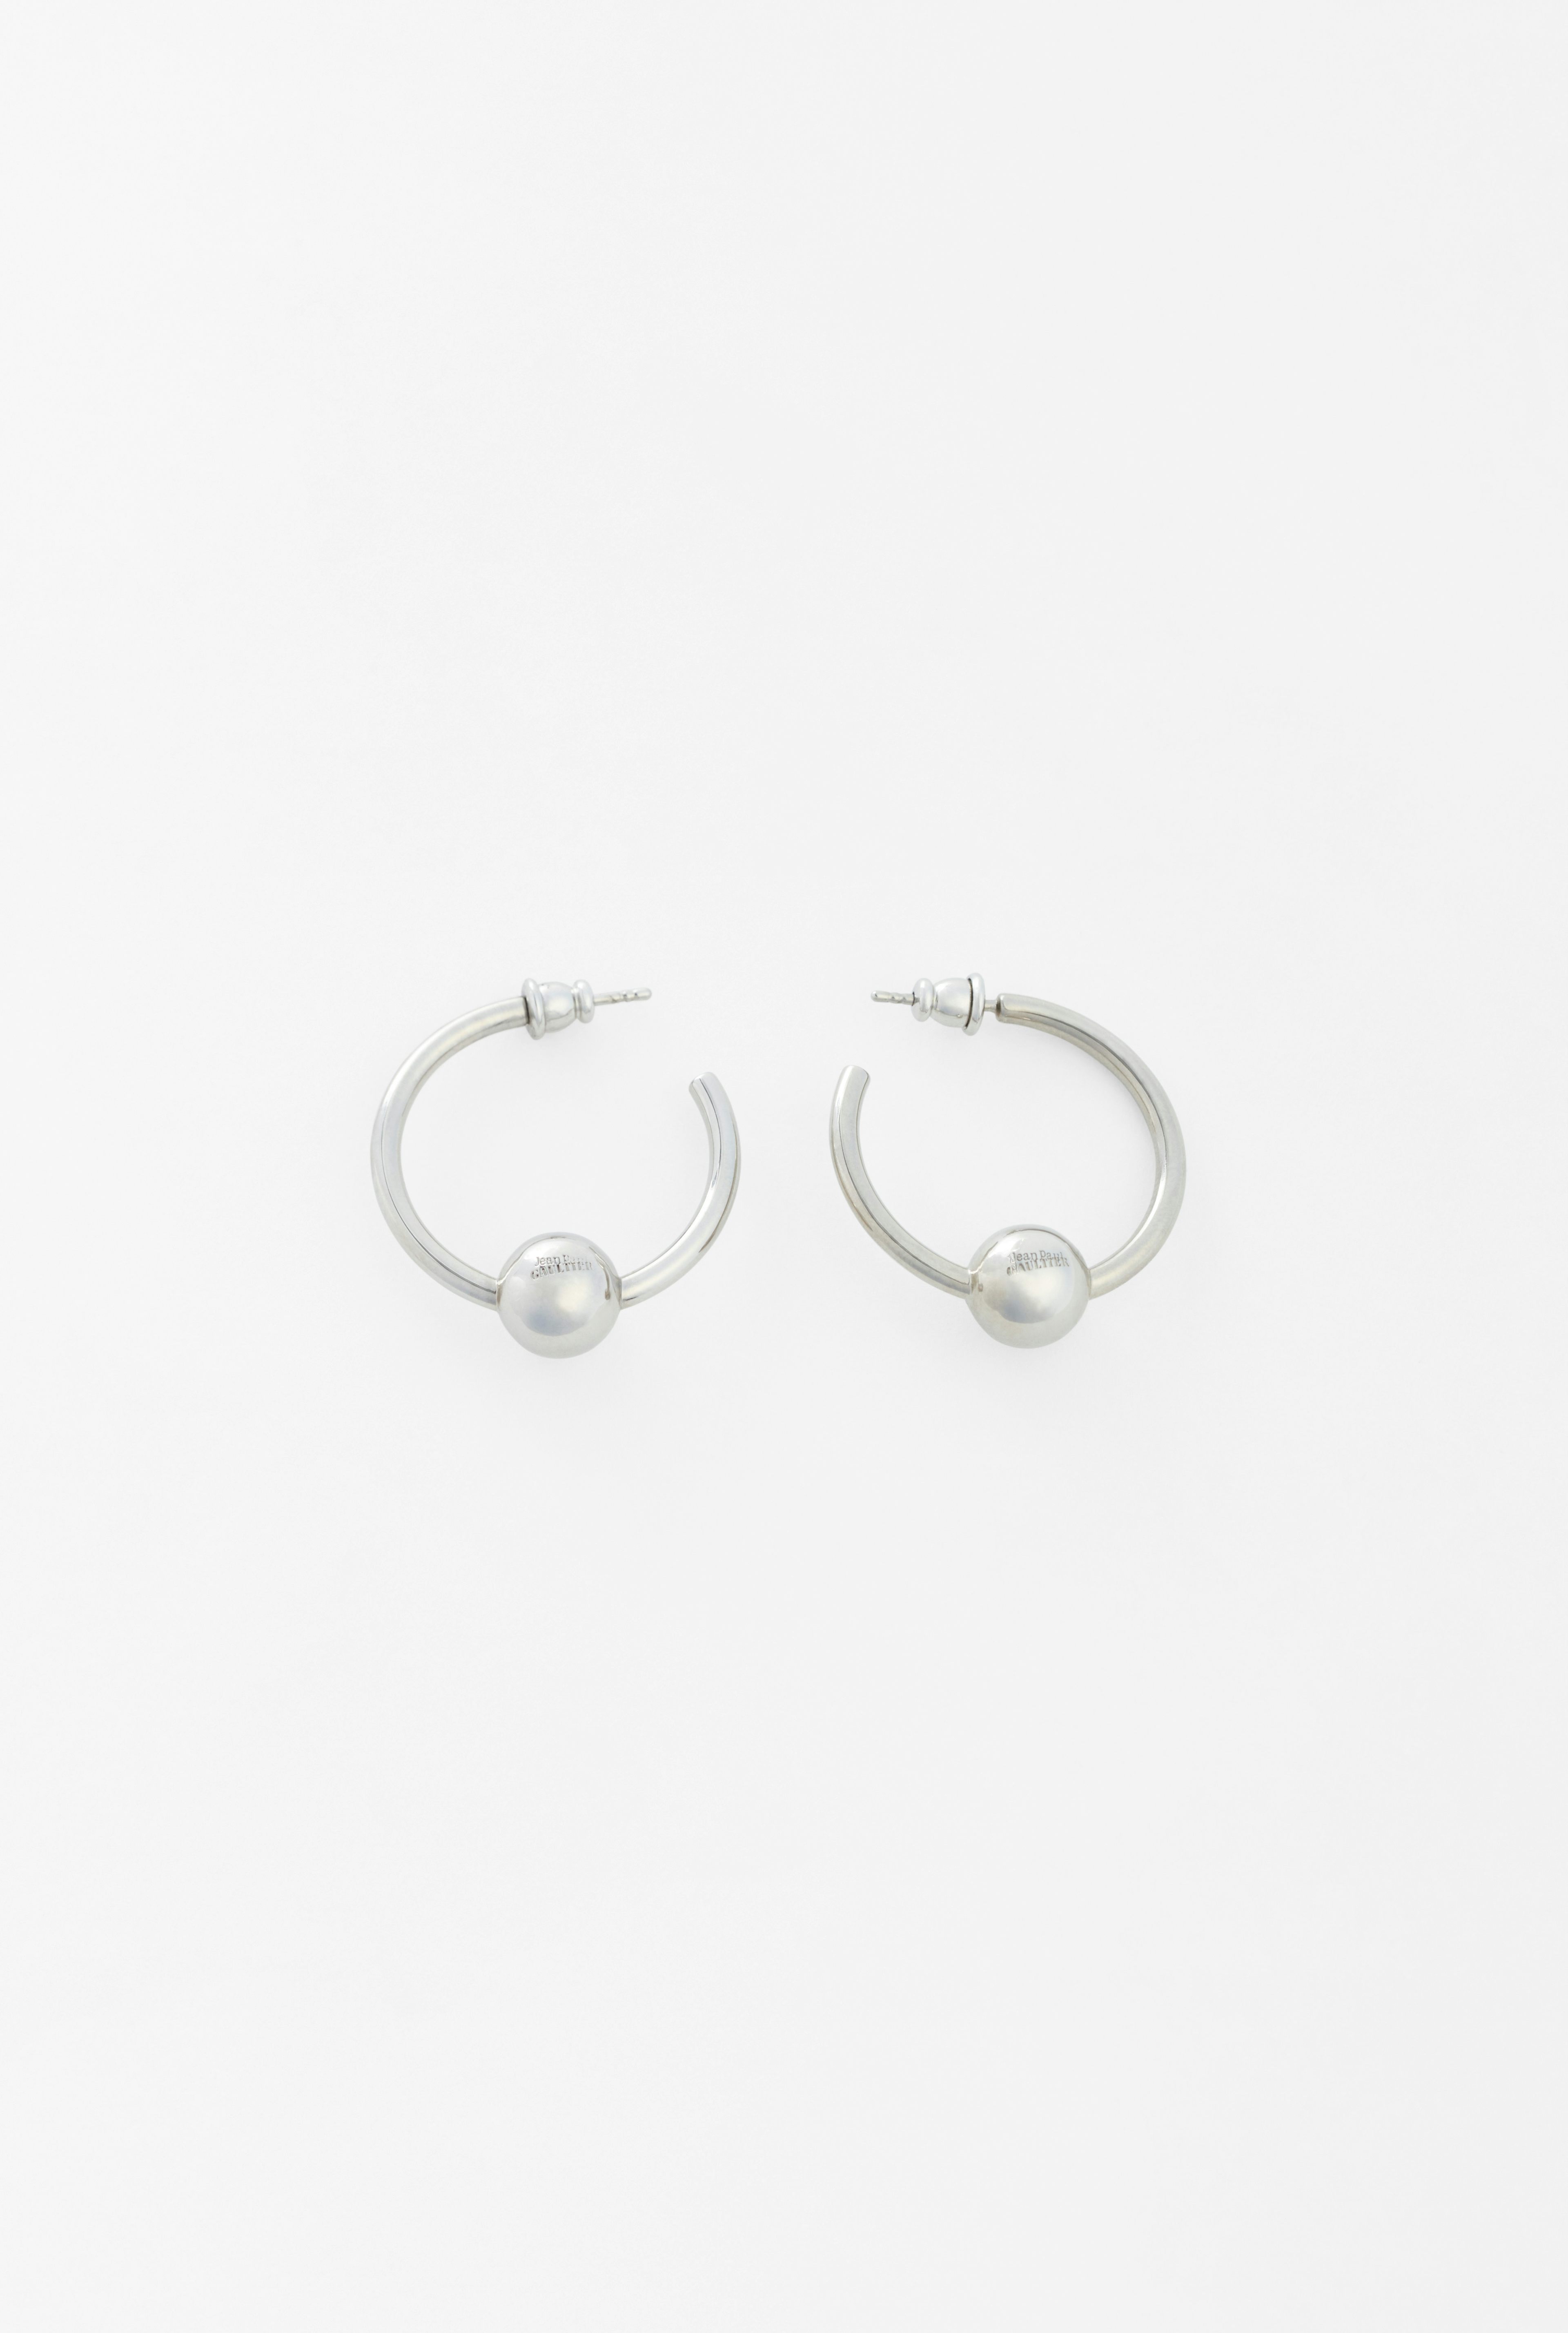 The Piercing earrings Jean Paul Gaultier